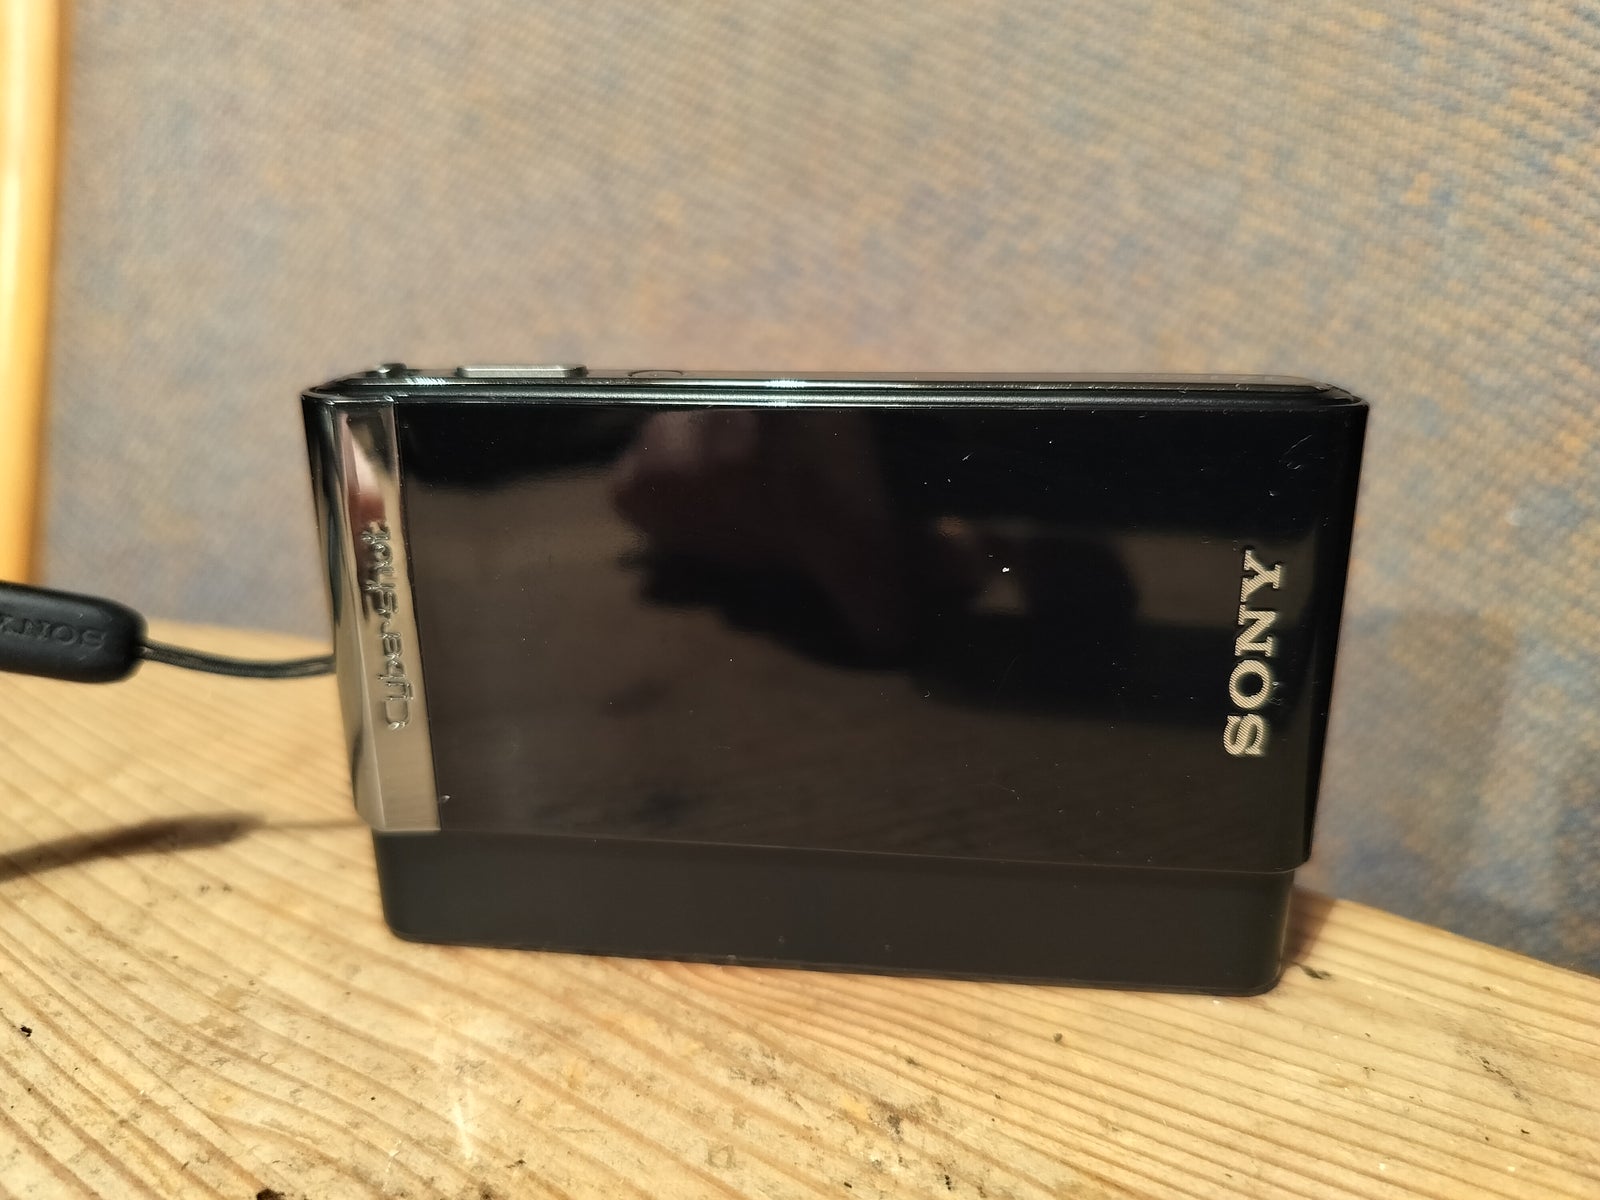 Sony, DSC-T90, 12.2 megapixels